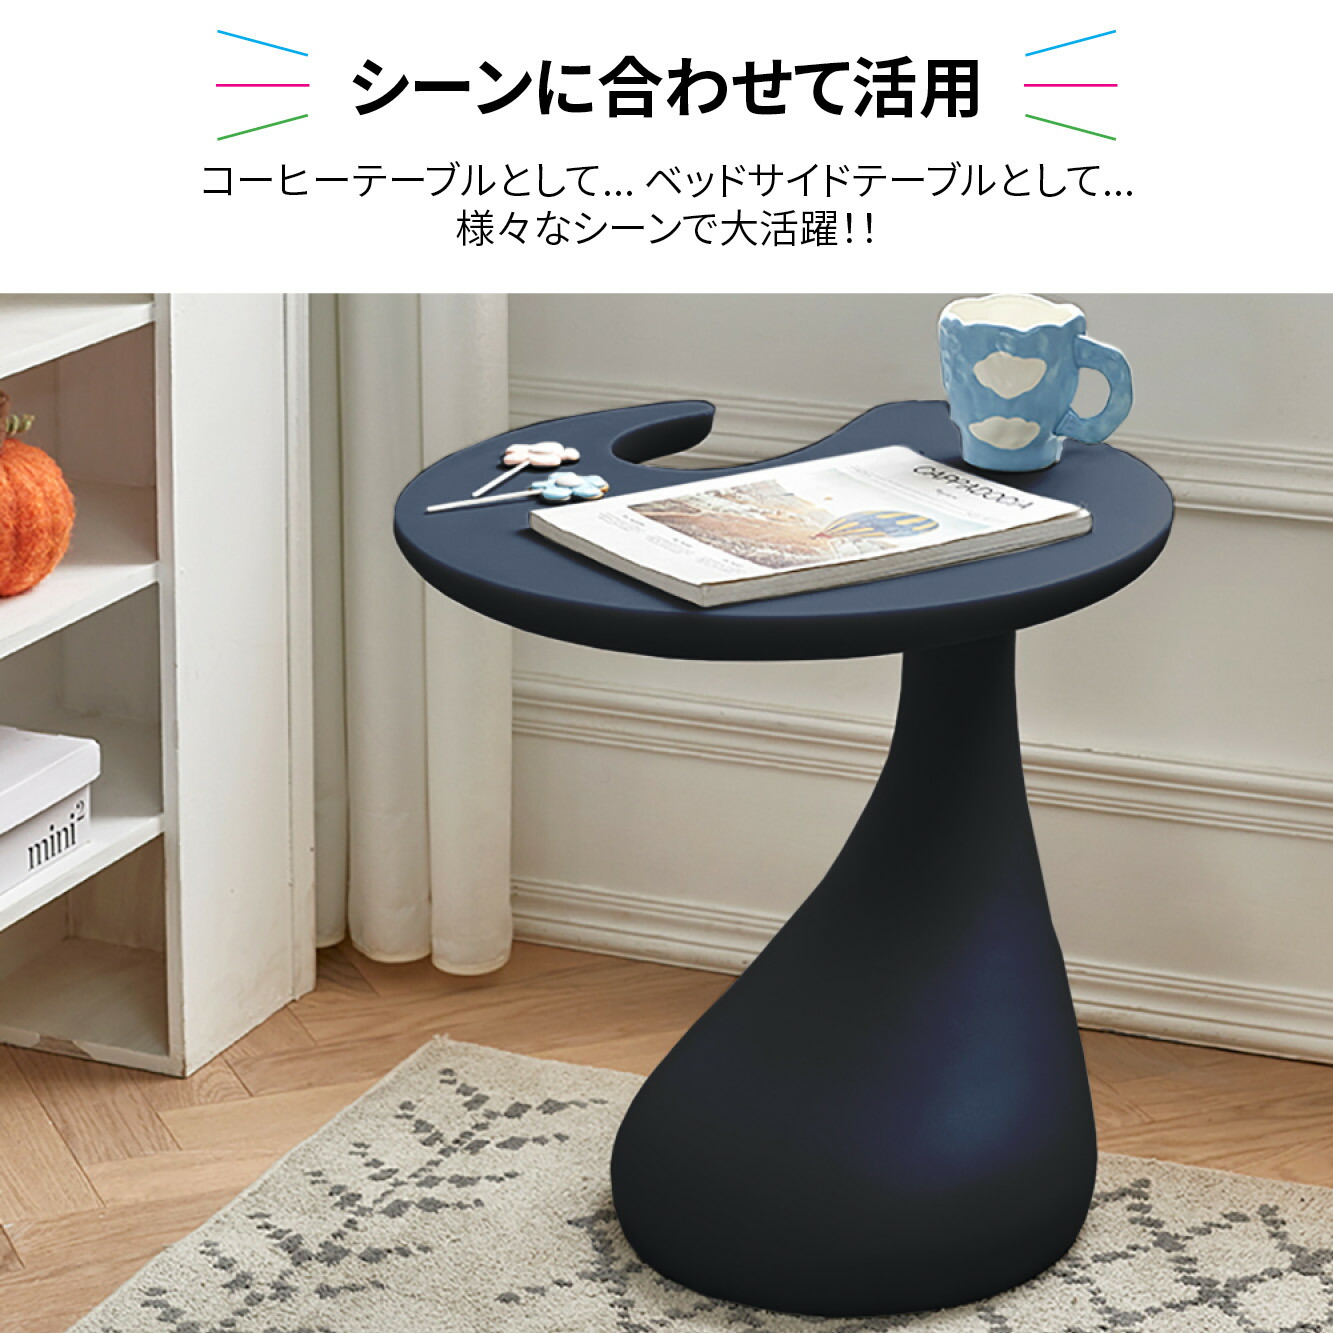 VeroMan サイドテーブル 丸型 円形 ミニテーブル コンパクト ラウンド おしゃれ レトロ 韓国インテリア テーブル 